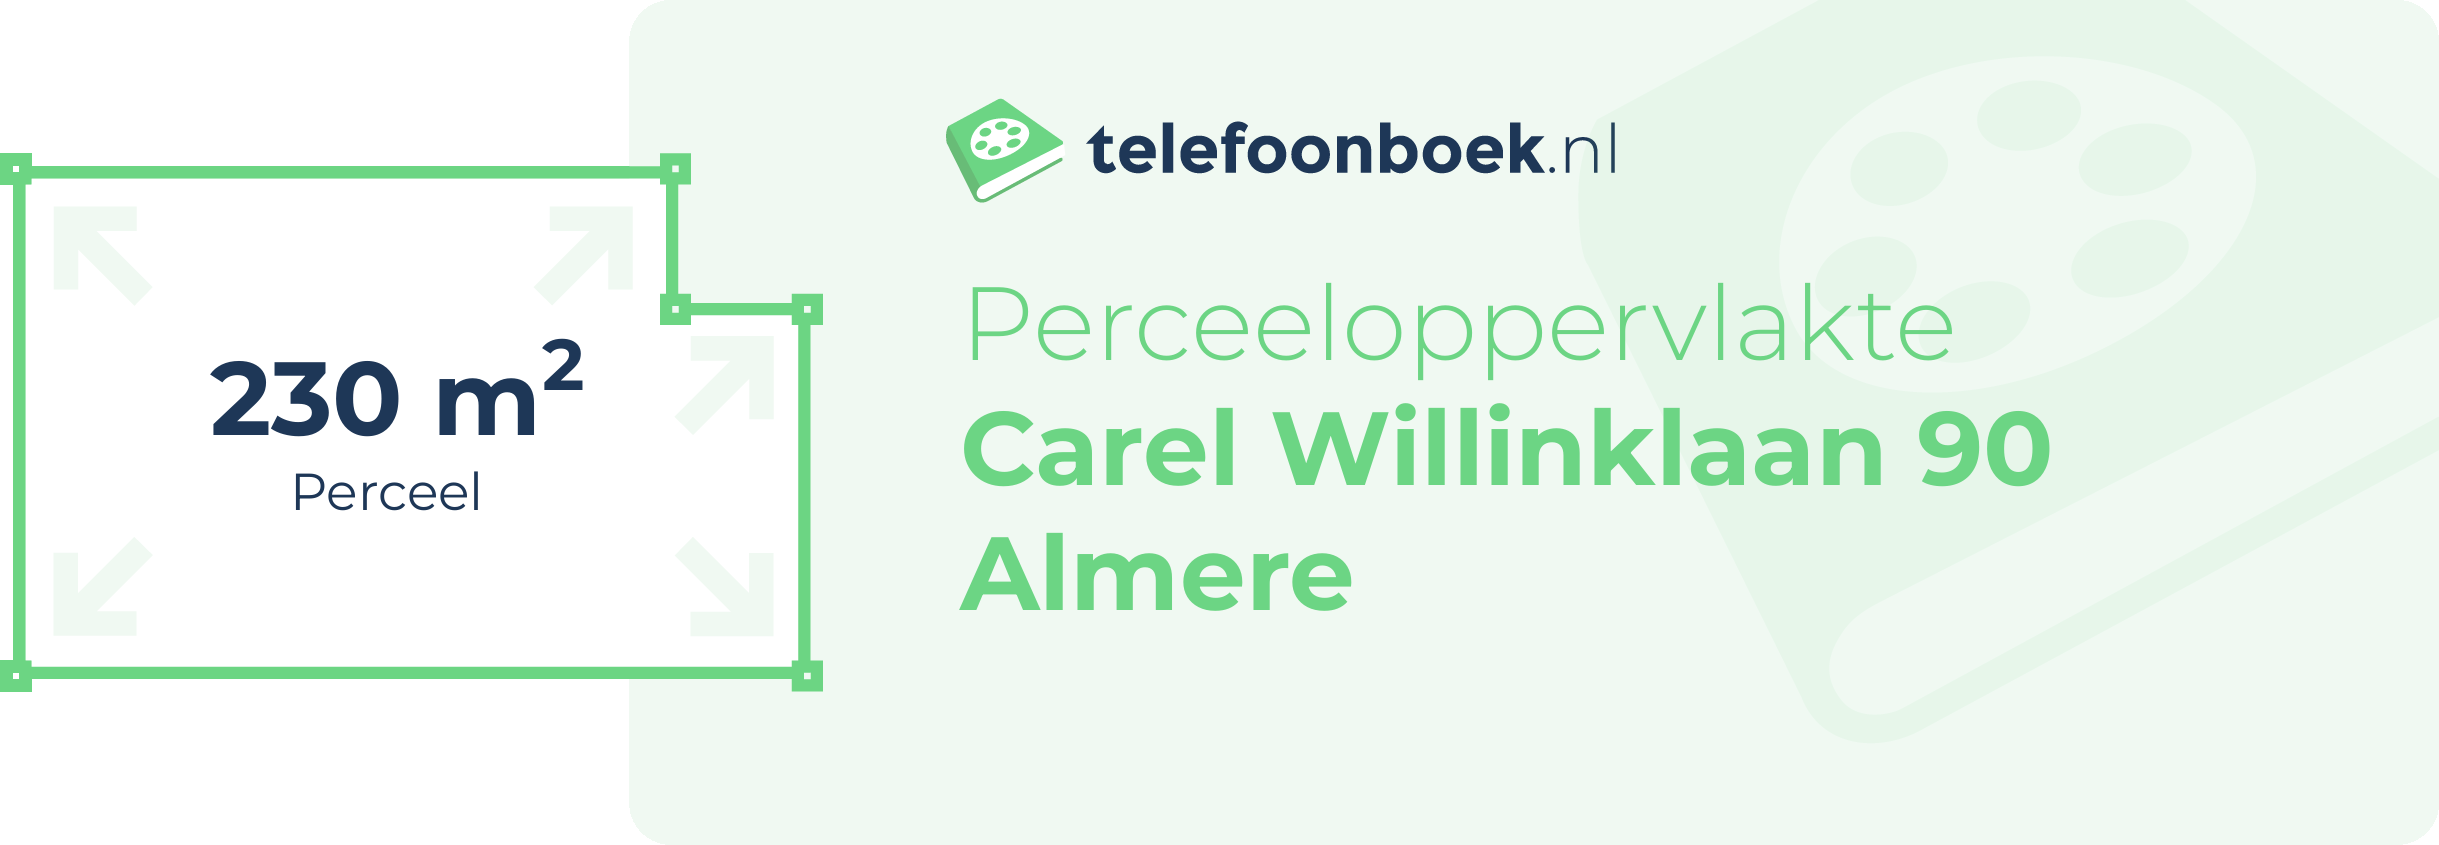 Perceeloppervlakte Carel Willinklaan 90 Almere